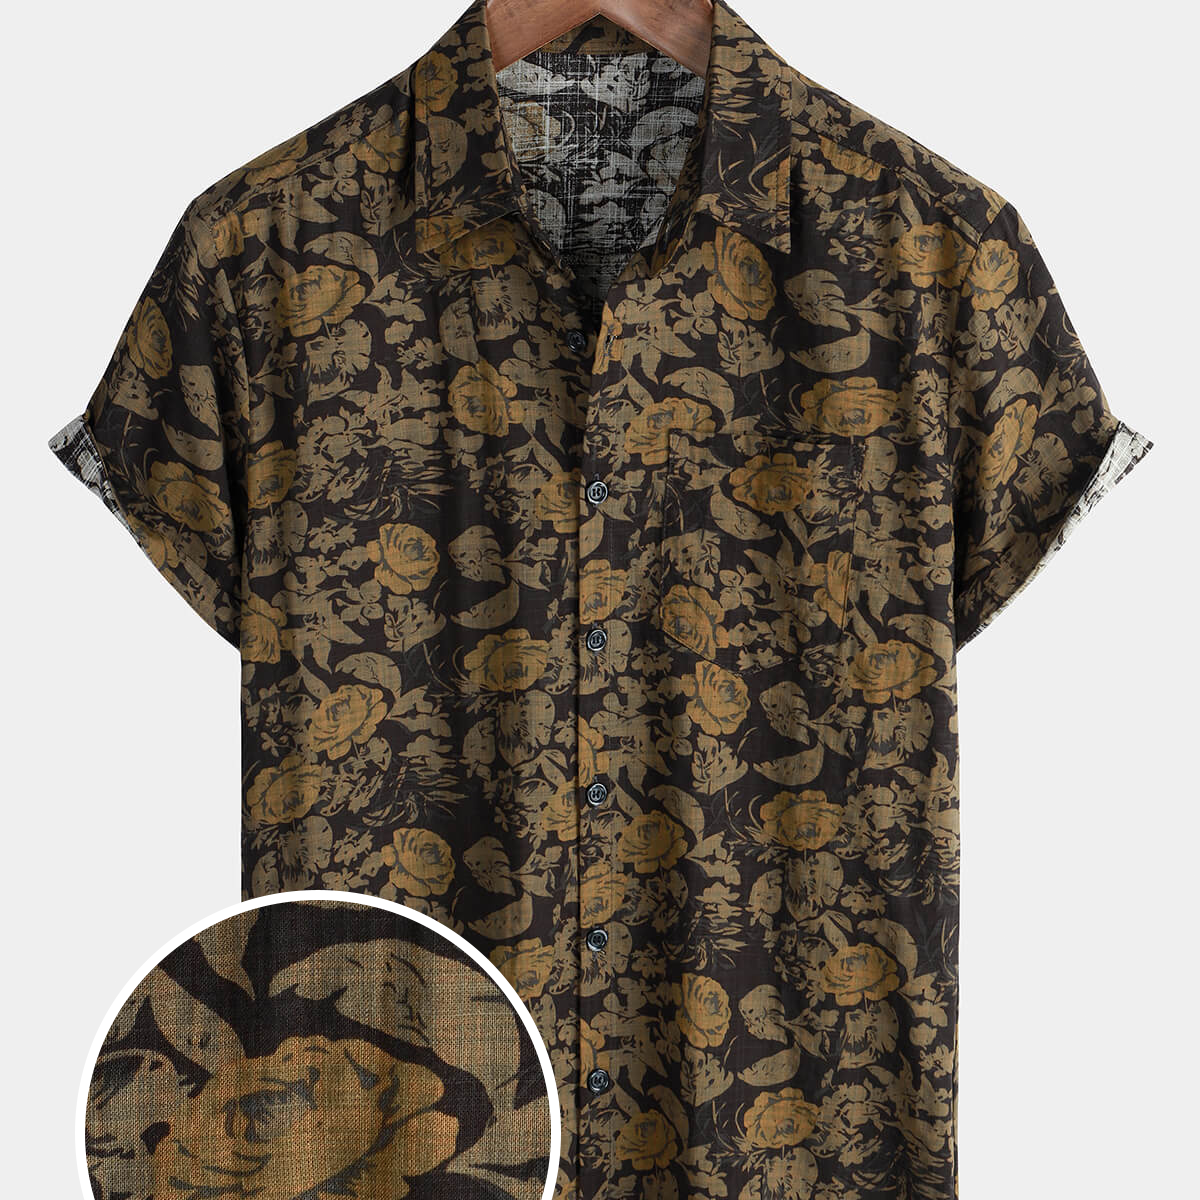 Chemise boutonnée à manches courtes en coton pour hommes, motif floral, vintage, vacances